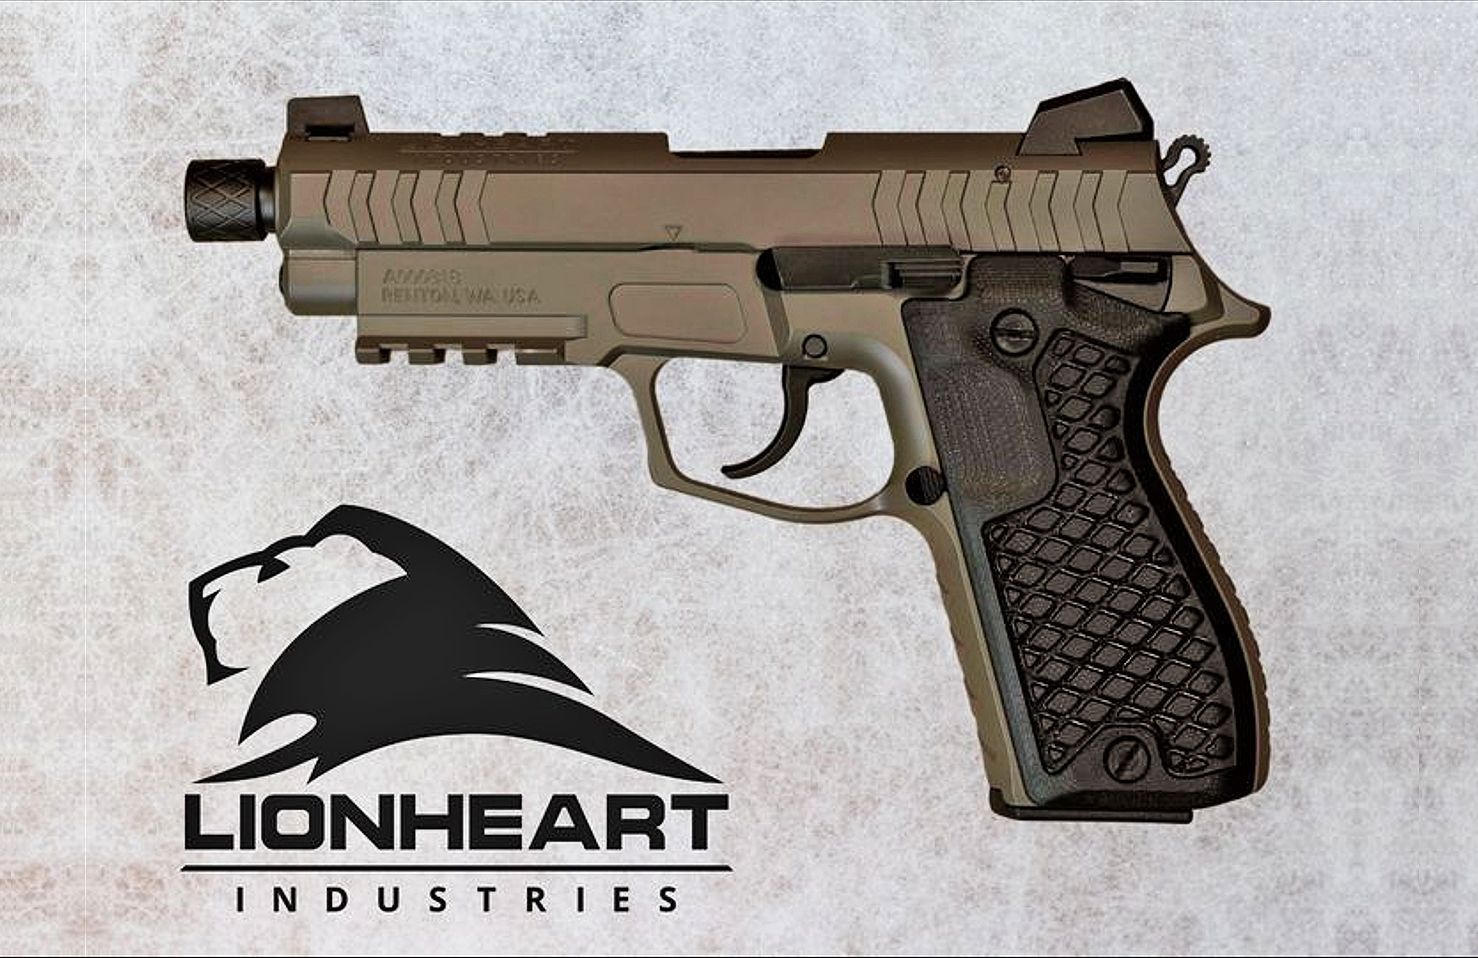 Lionheart Industries Regulus: Double Action Plus!